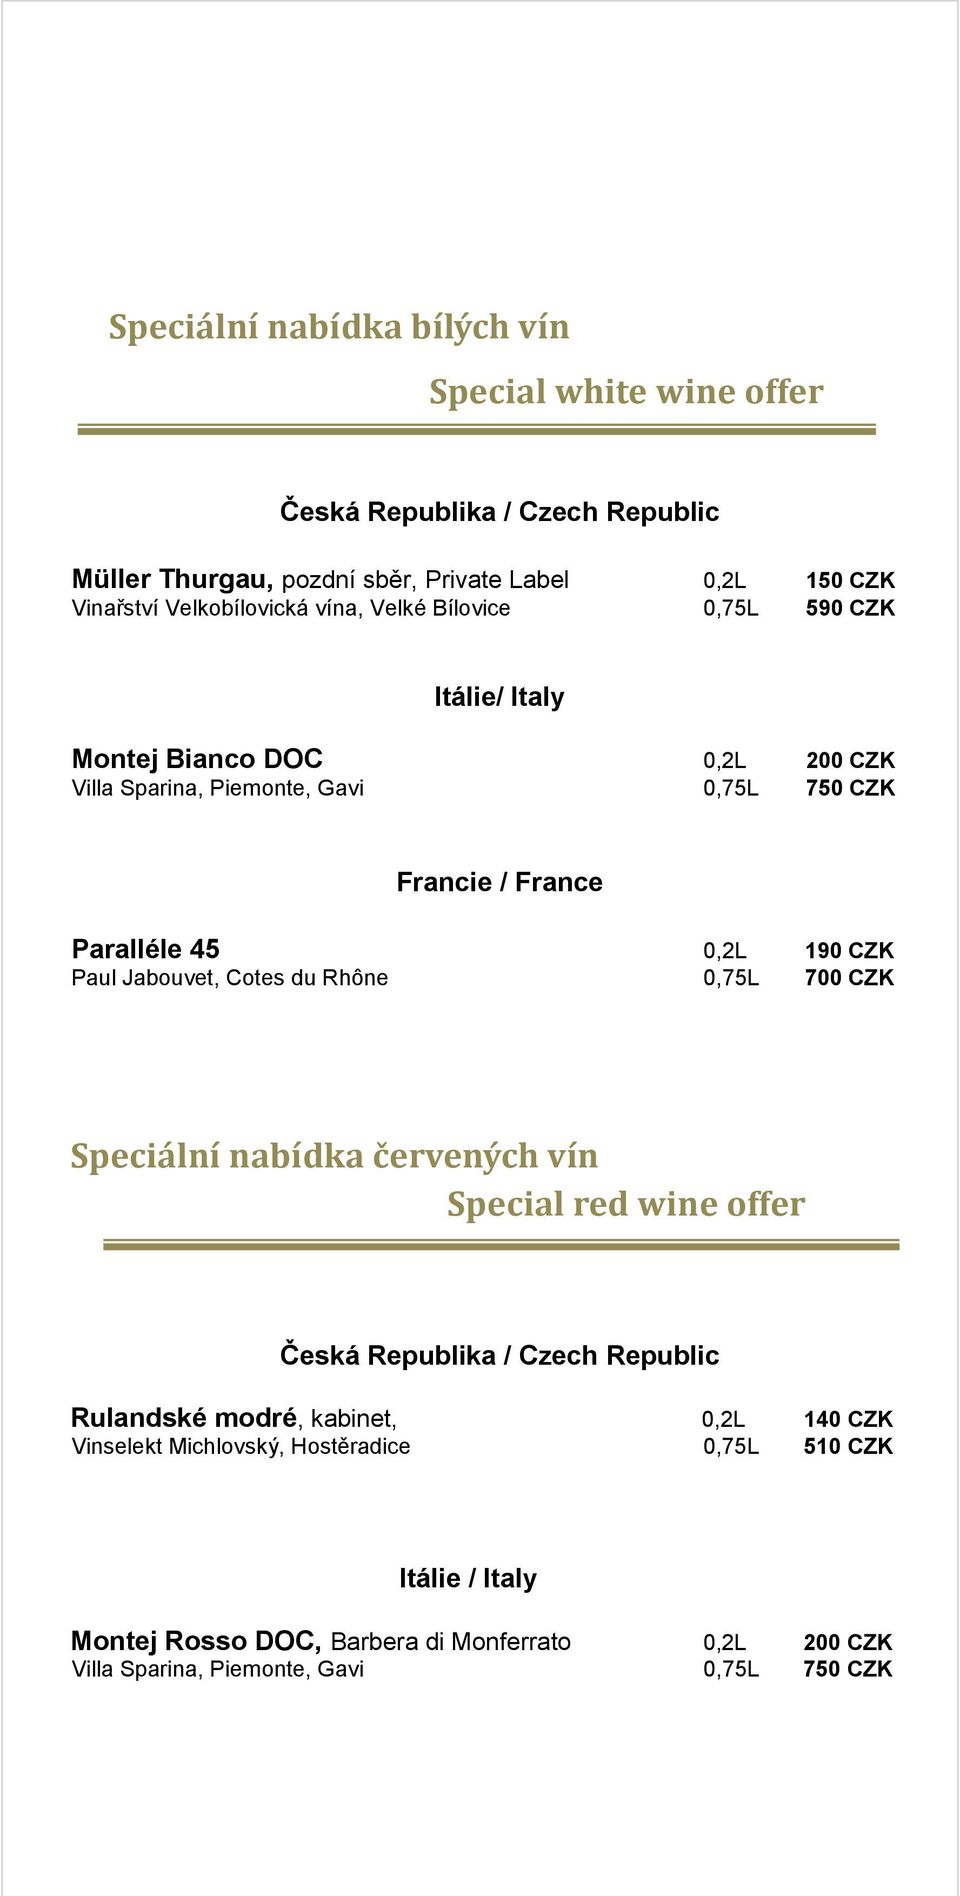 Jabouvet, Cotes du Rhône 0,75L 700 CZK Speciální nabídka červených vín Special red wine offer Rulandské modré, kabinet, 0,2L 140 CZK